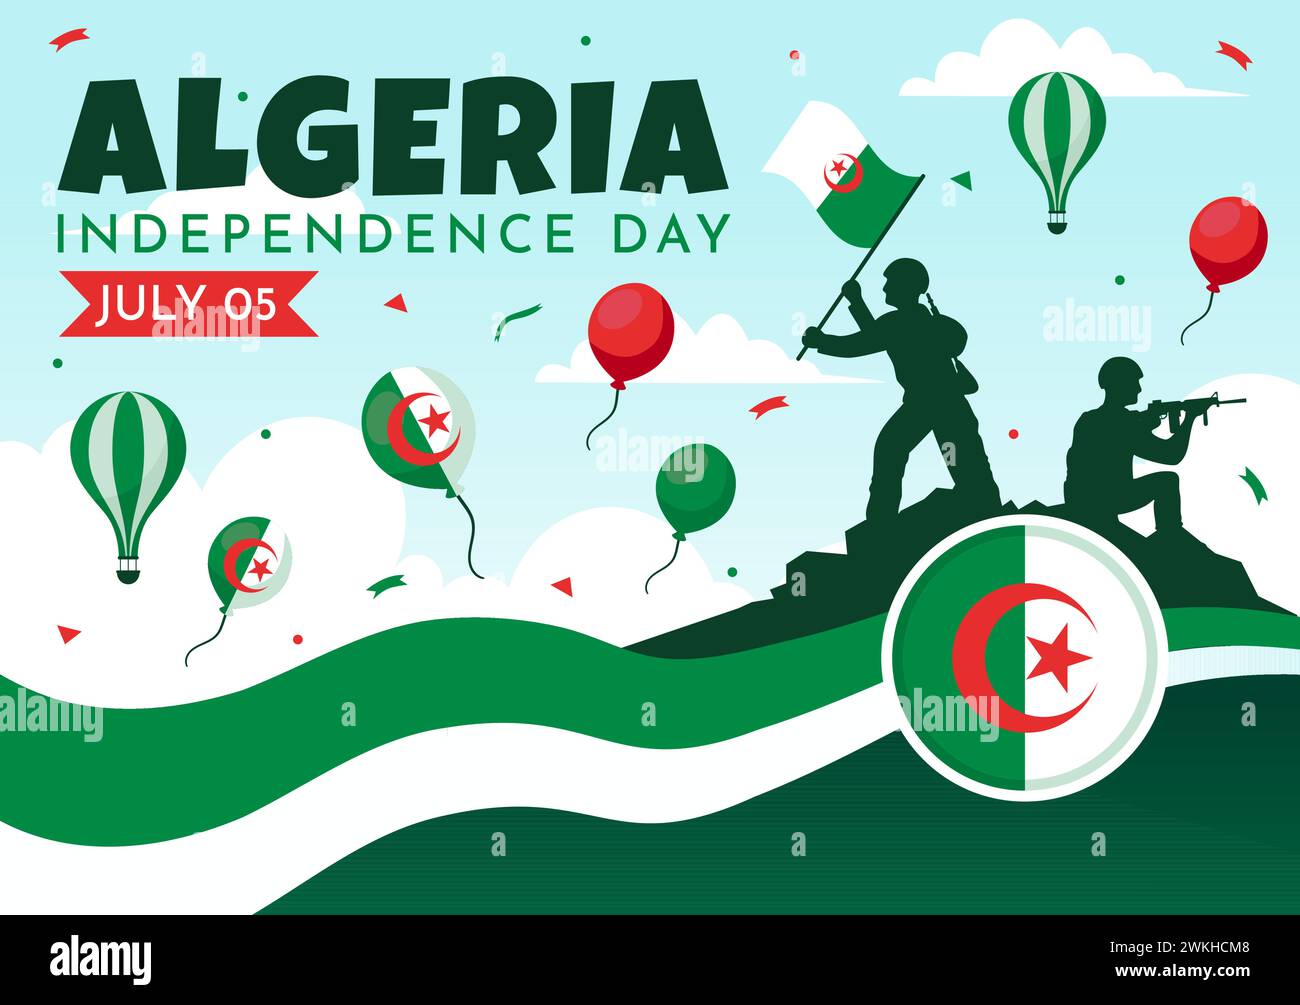 Felice Algeria Independence Day illustrazione vettoriale con bandiera ondulata e mappa in National Holiday Flat Cartoon background Design Illustrazione Vettoriale